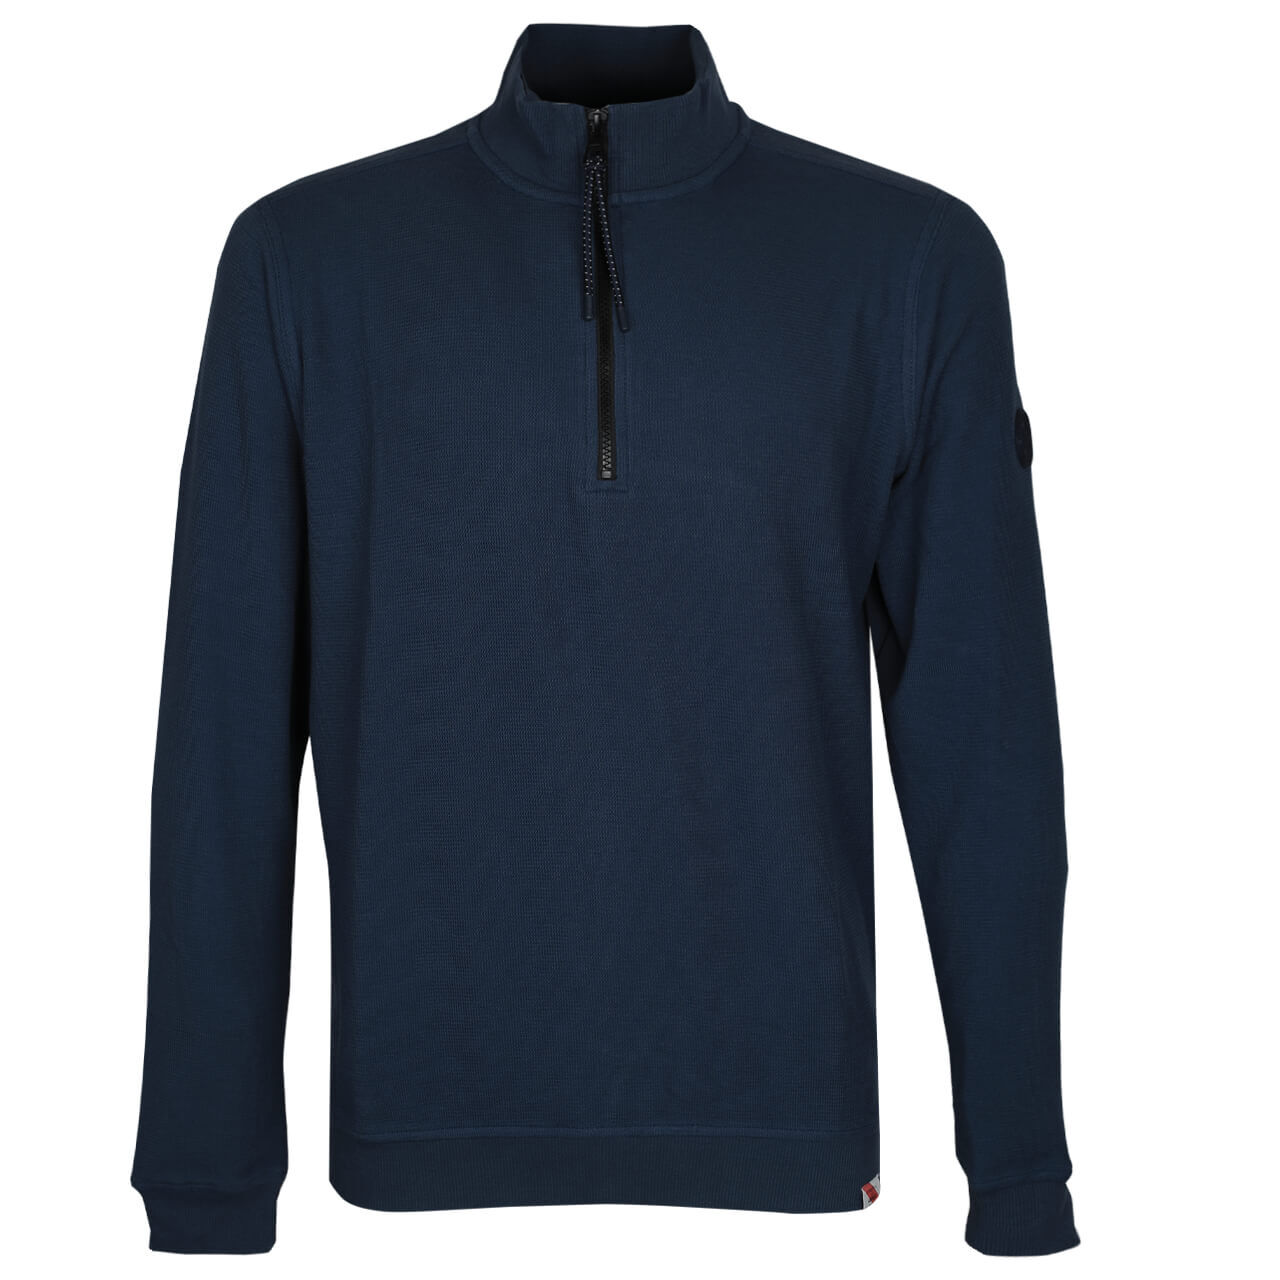 Lerros Troyer Sweatshirt für Herren in Blau, FarbNr.: 448